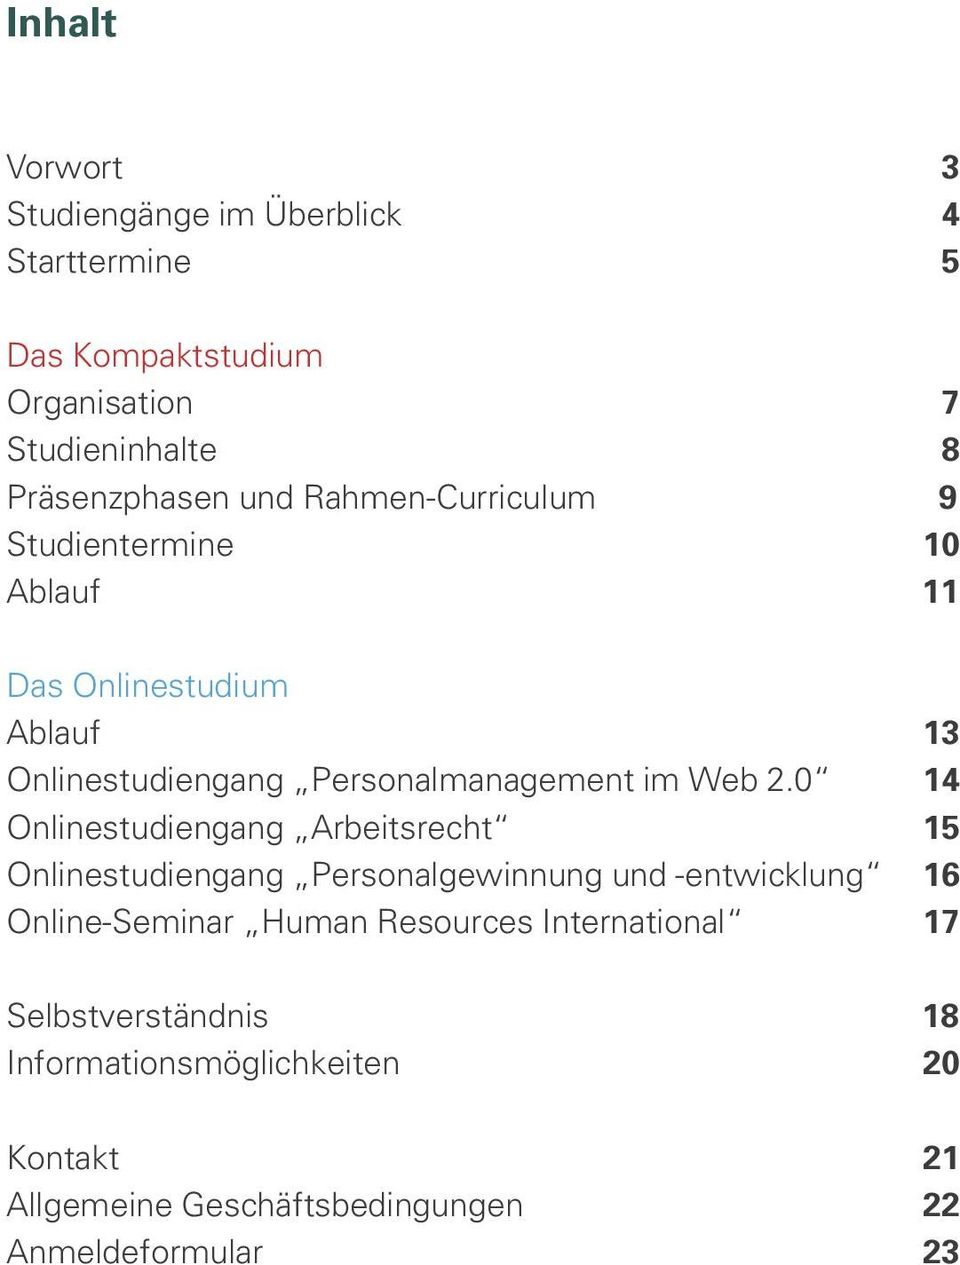 0 14 Onlinestudiengang Arbeitsrecht 15 Onlinestudiengang Personalgewinnung und -entwicklung 16 Online-Seminar Human